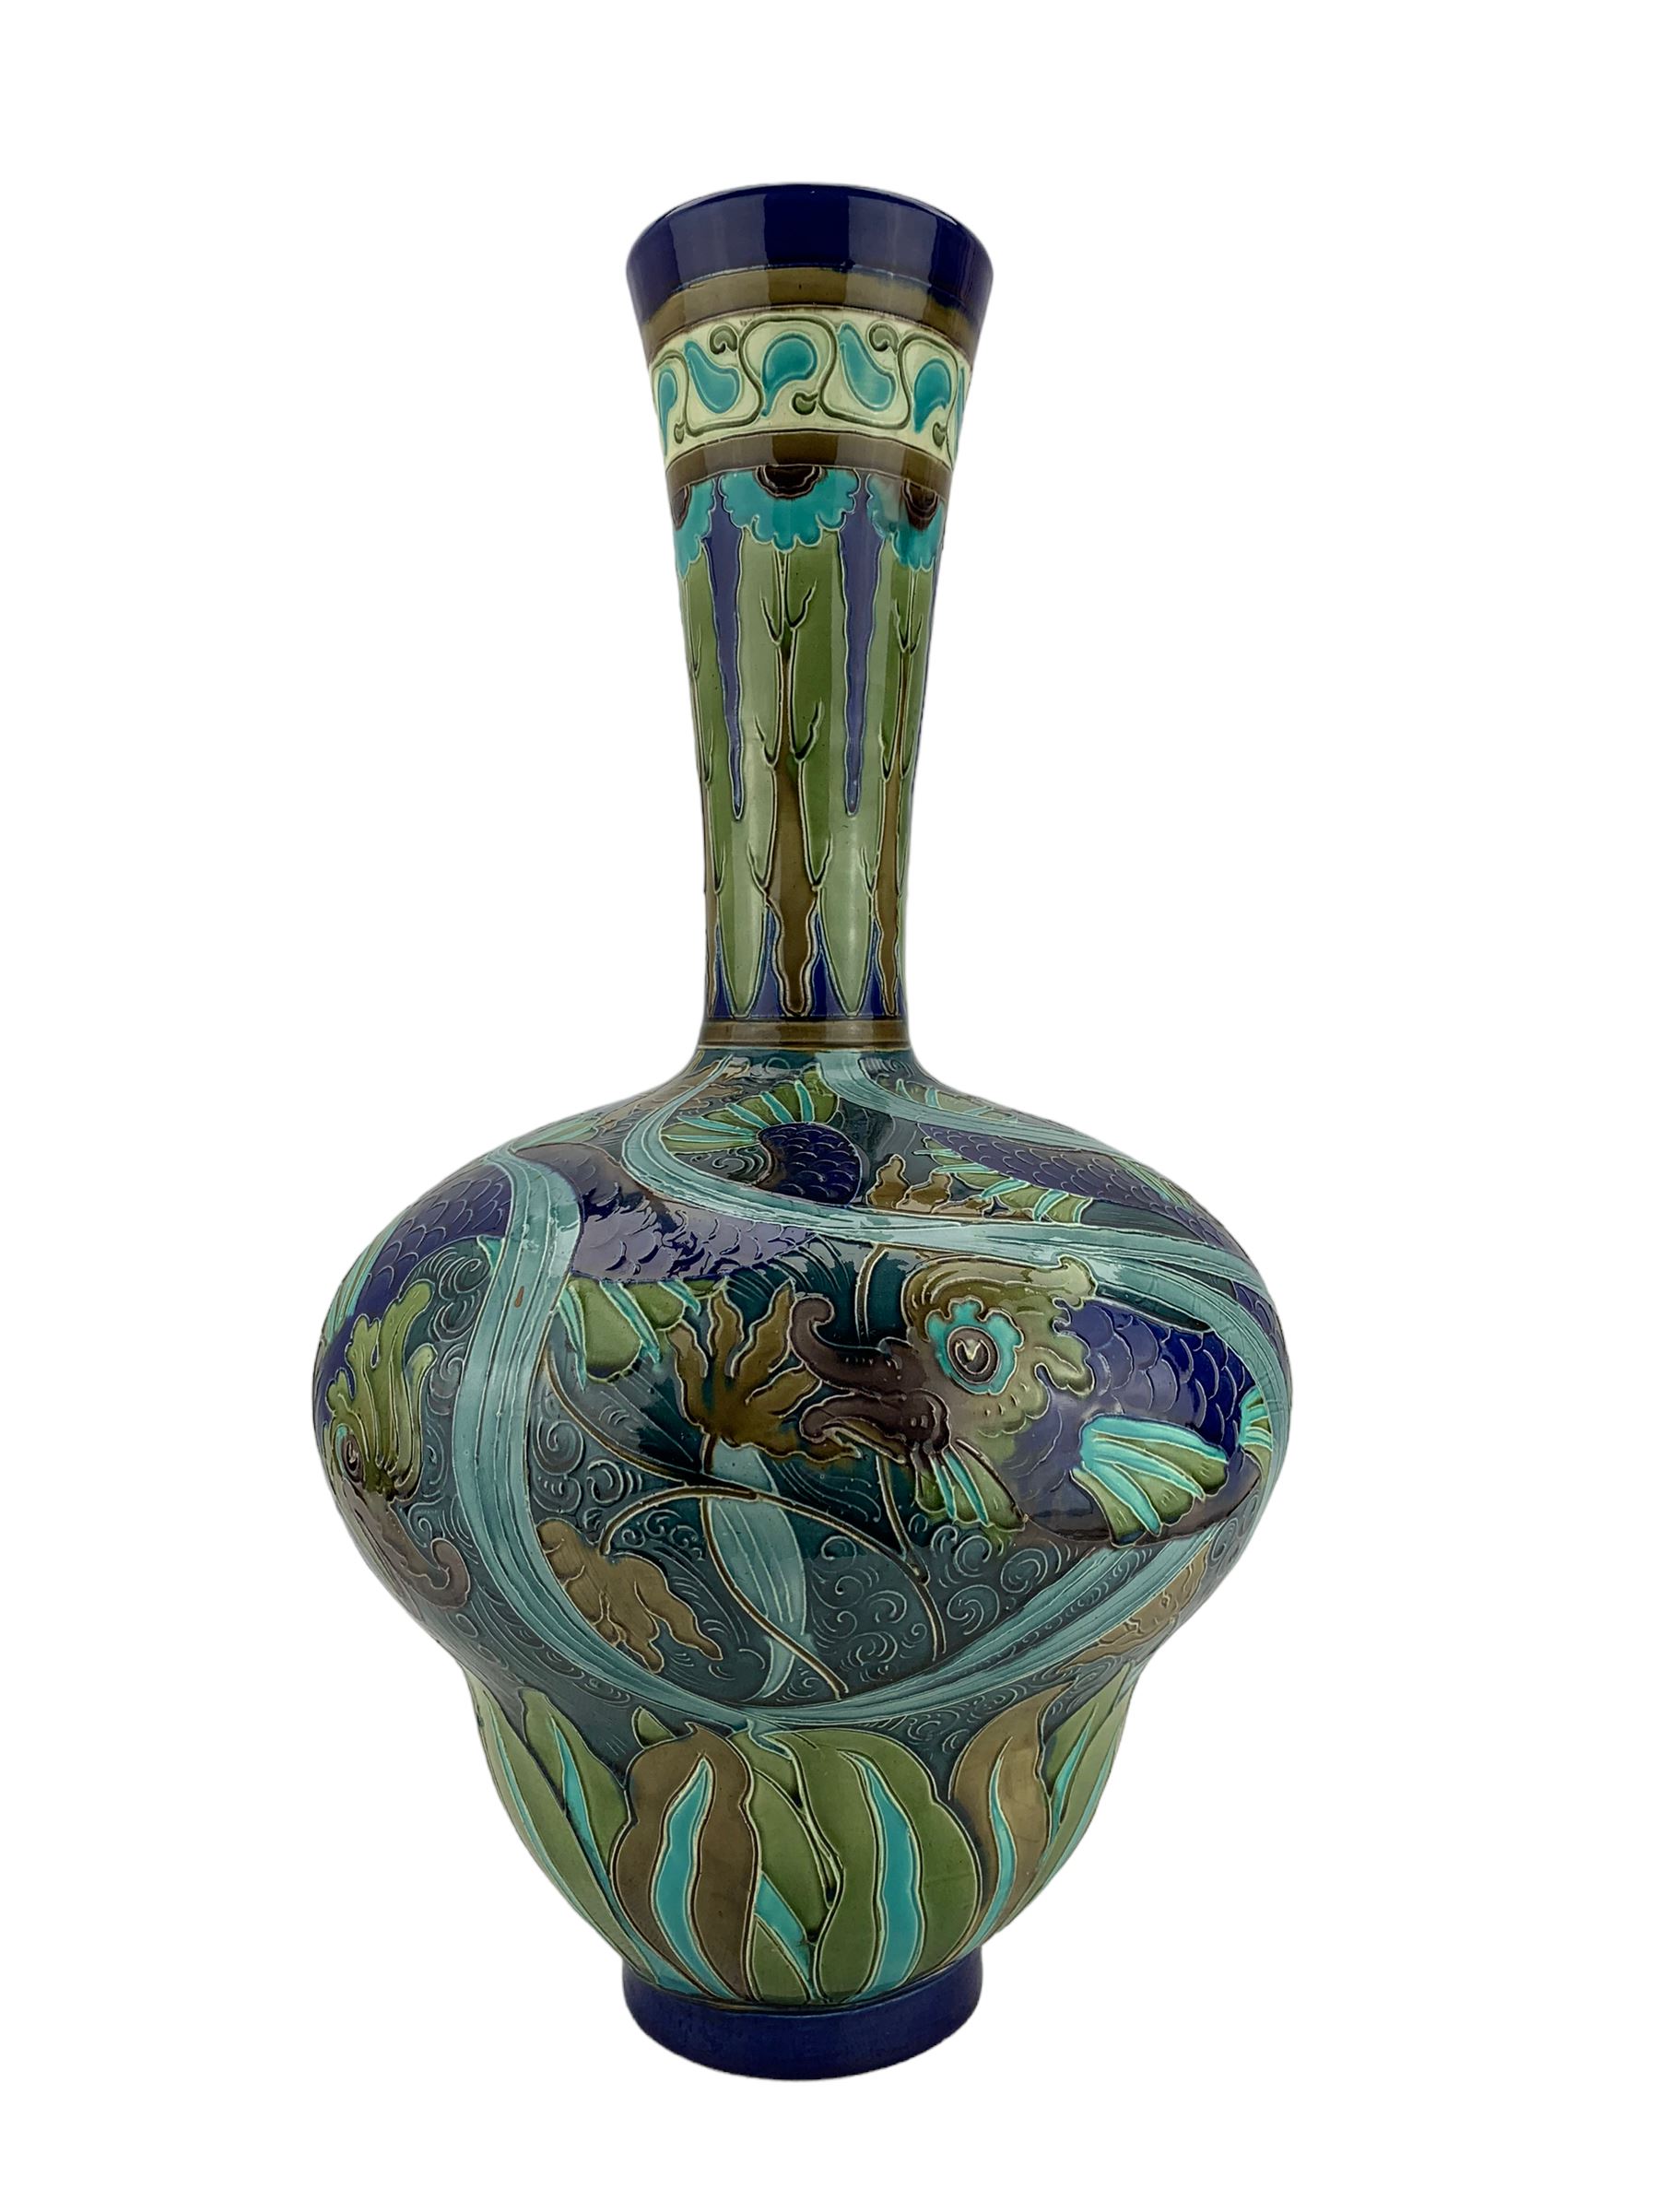 Large Burmantofts Faience partie-colour vase - Image 3 of 6